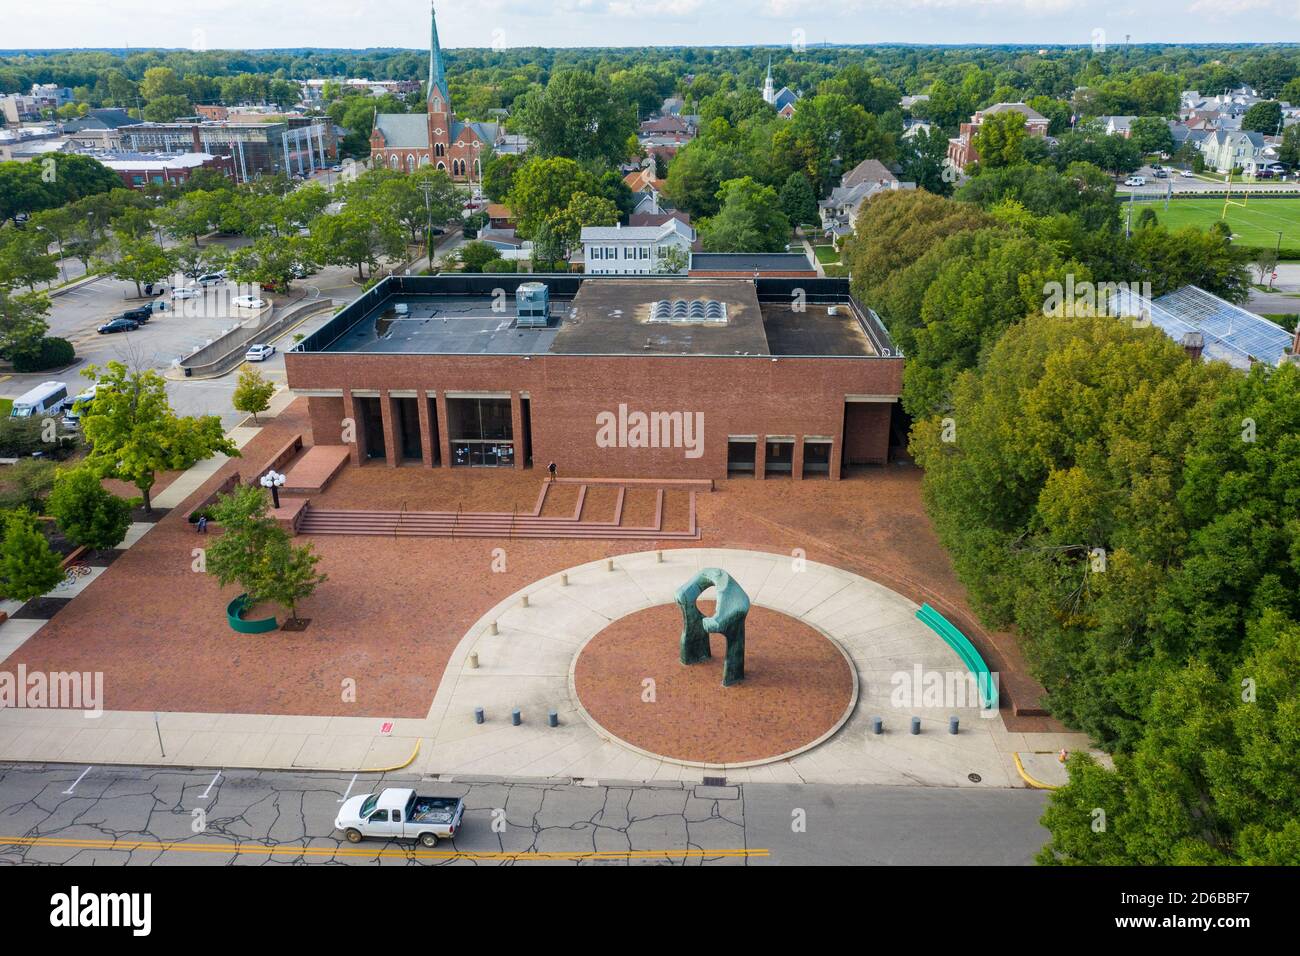 Sculpture de la grande arche par Henry Moore, la bibliothèque commémorative Cleo Rogers ou la bibliothèque publique du comté de Bartholomew, par IM PEI, Columbus, Indiana, États-Unis Banque D'Images